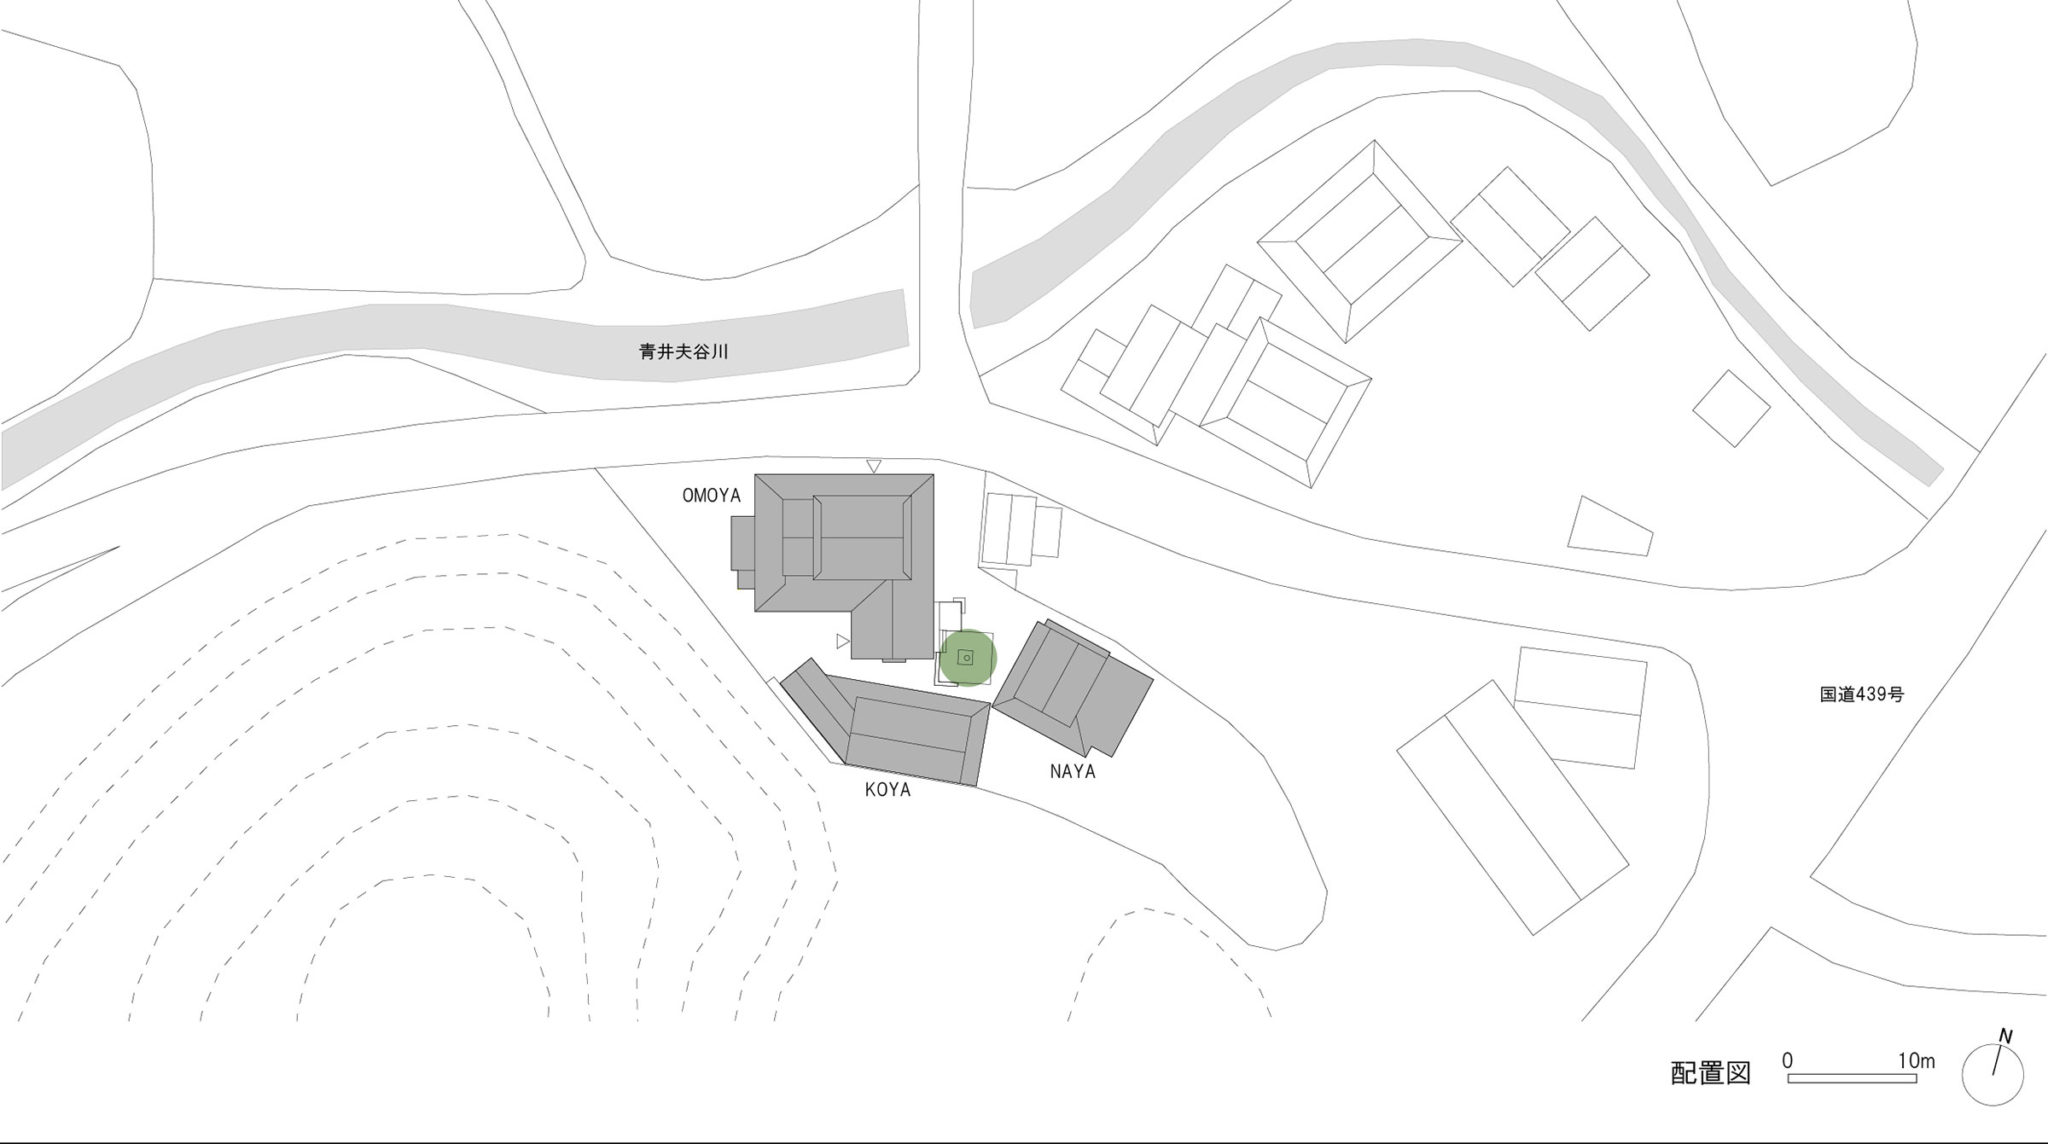 吉田周一郎 Shushi Architectsによる 徳島 神山町の 既存古民家を改修したサテライトオフィスの居住 宿泊施設 Sansan神山ラボomoya Architecturephoto Net